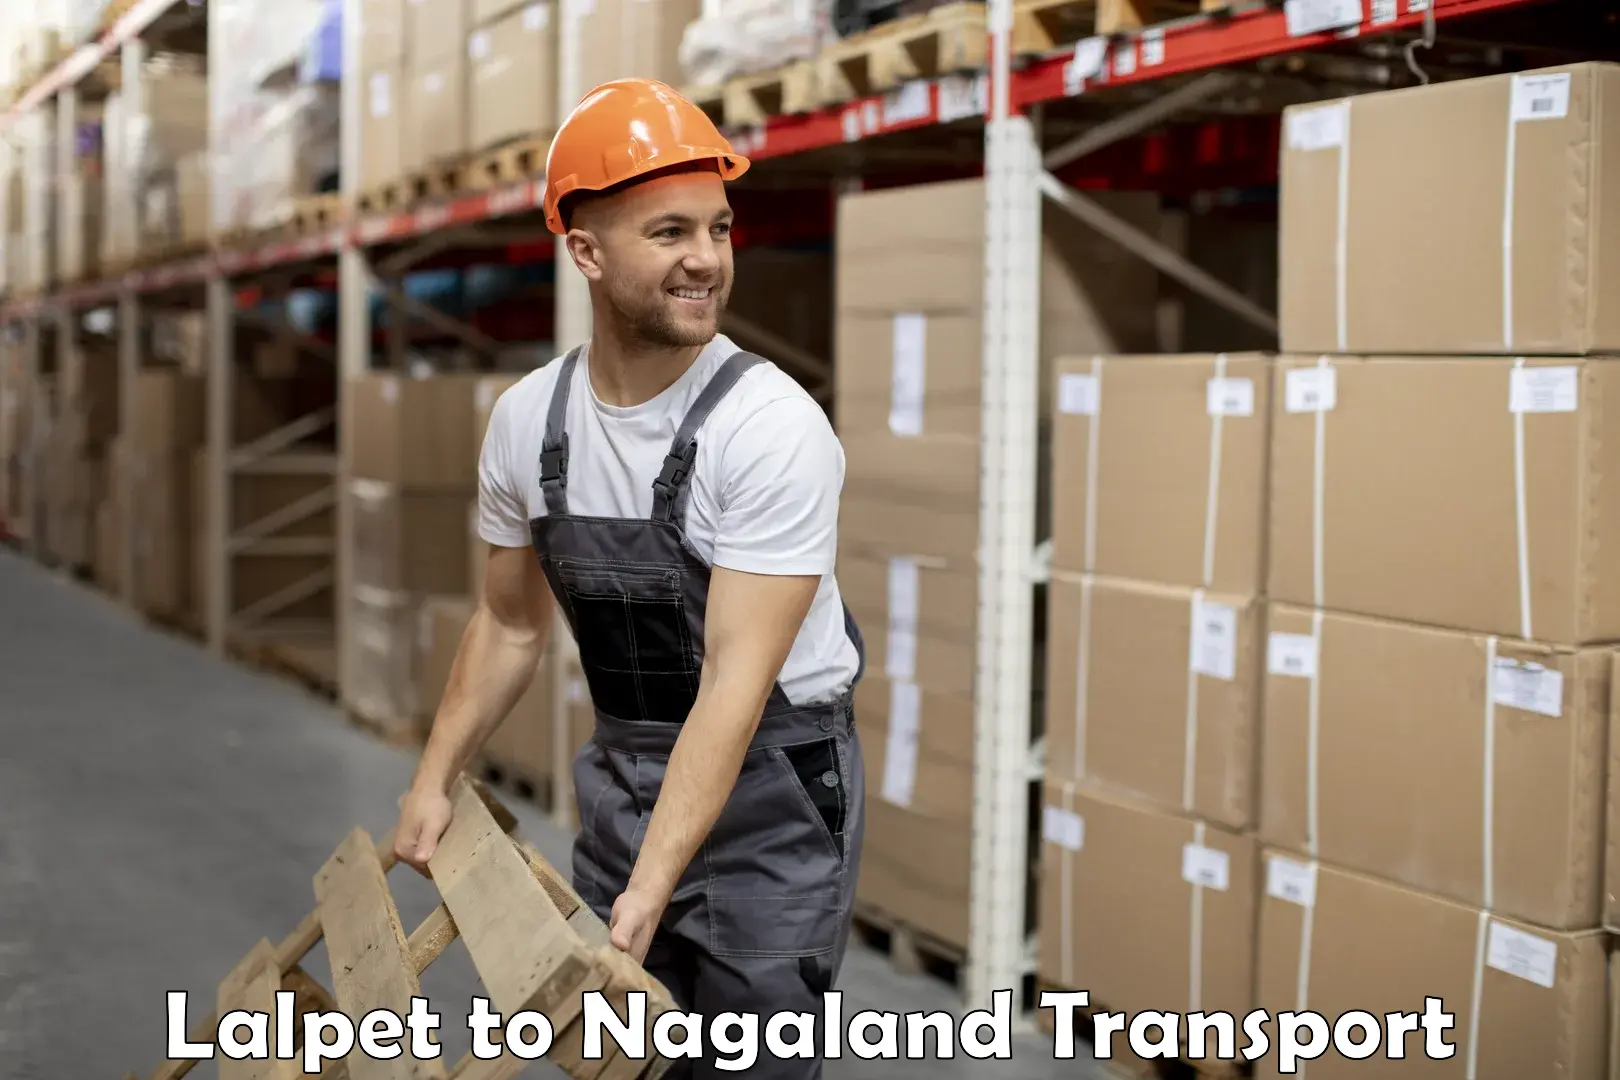 Nearest transport service Lalpet to Nagaland